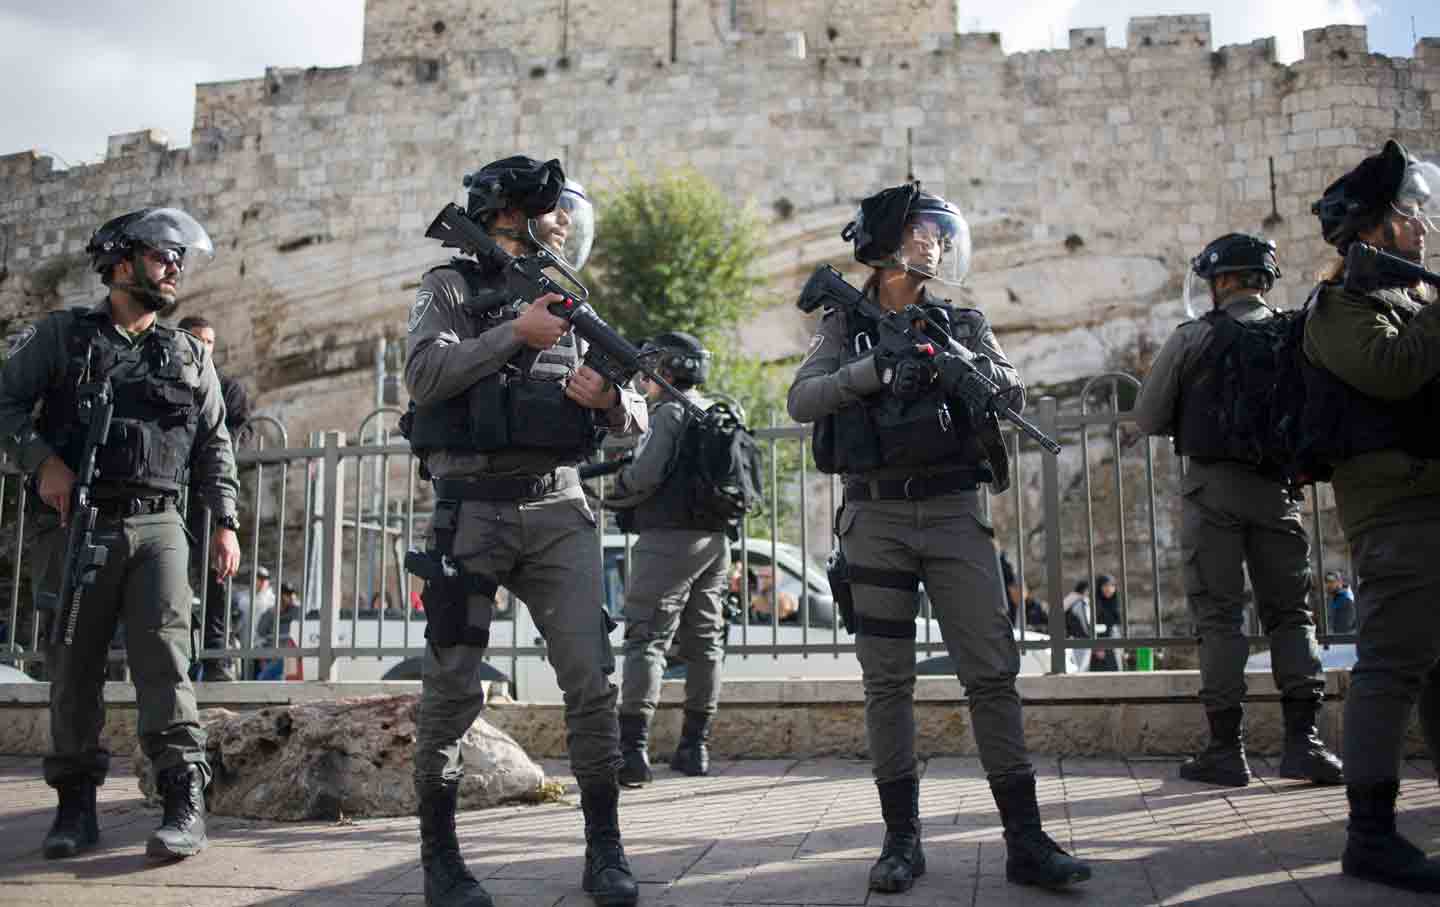 Jerusalem Israeli soldiers